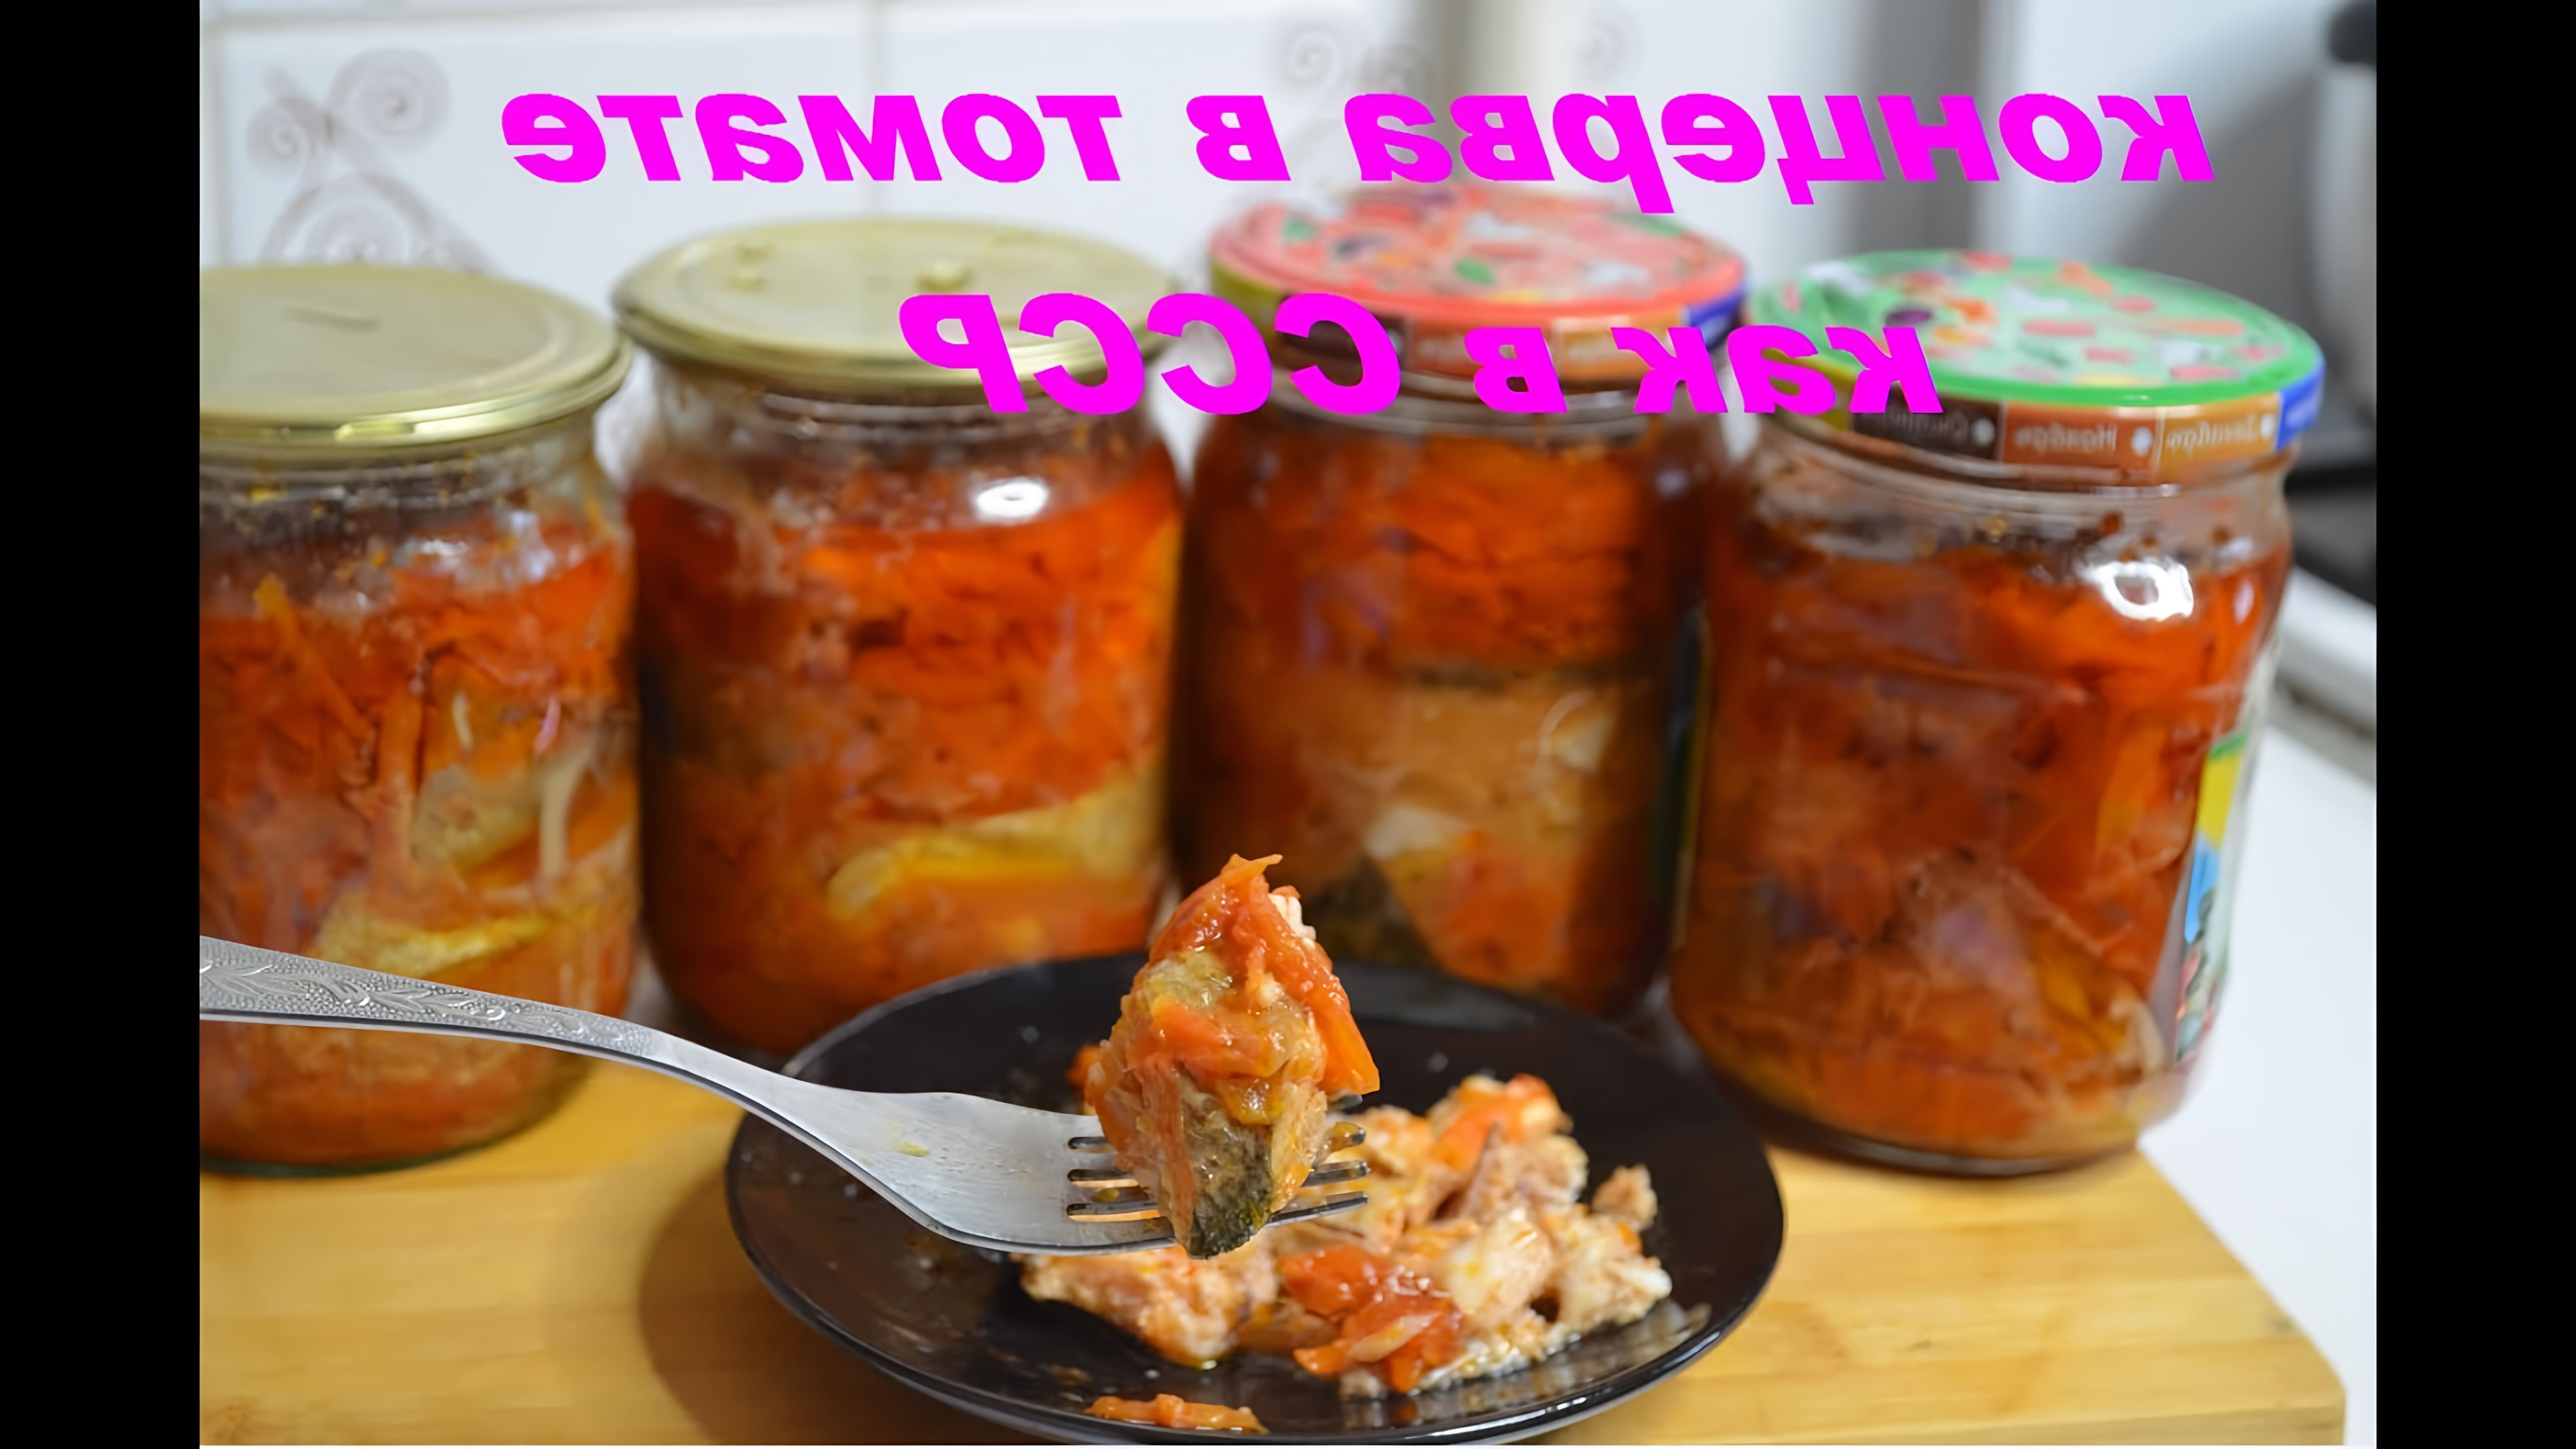 Видео как приготовить домашний томатный соус с консервированной рыбой вручную, без использования скороварки или других современных приборов